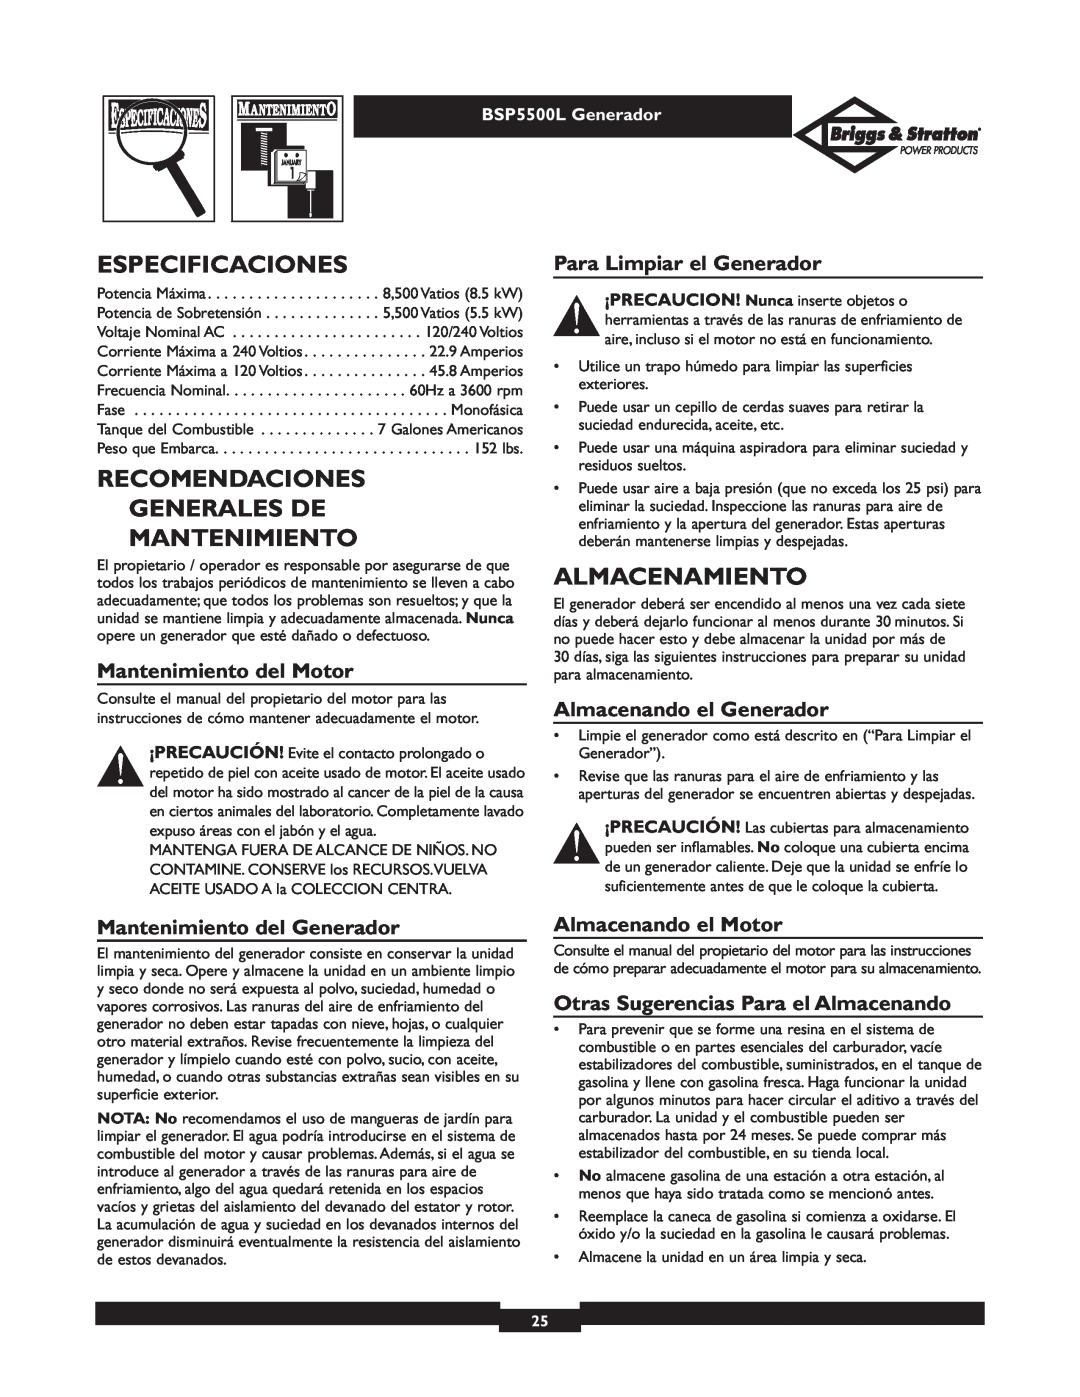 Briggs & Stratton bsp5500l owner manual Especificaciones, Recomendaciones Generales De Mantenimiento, Almacenamiento 